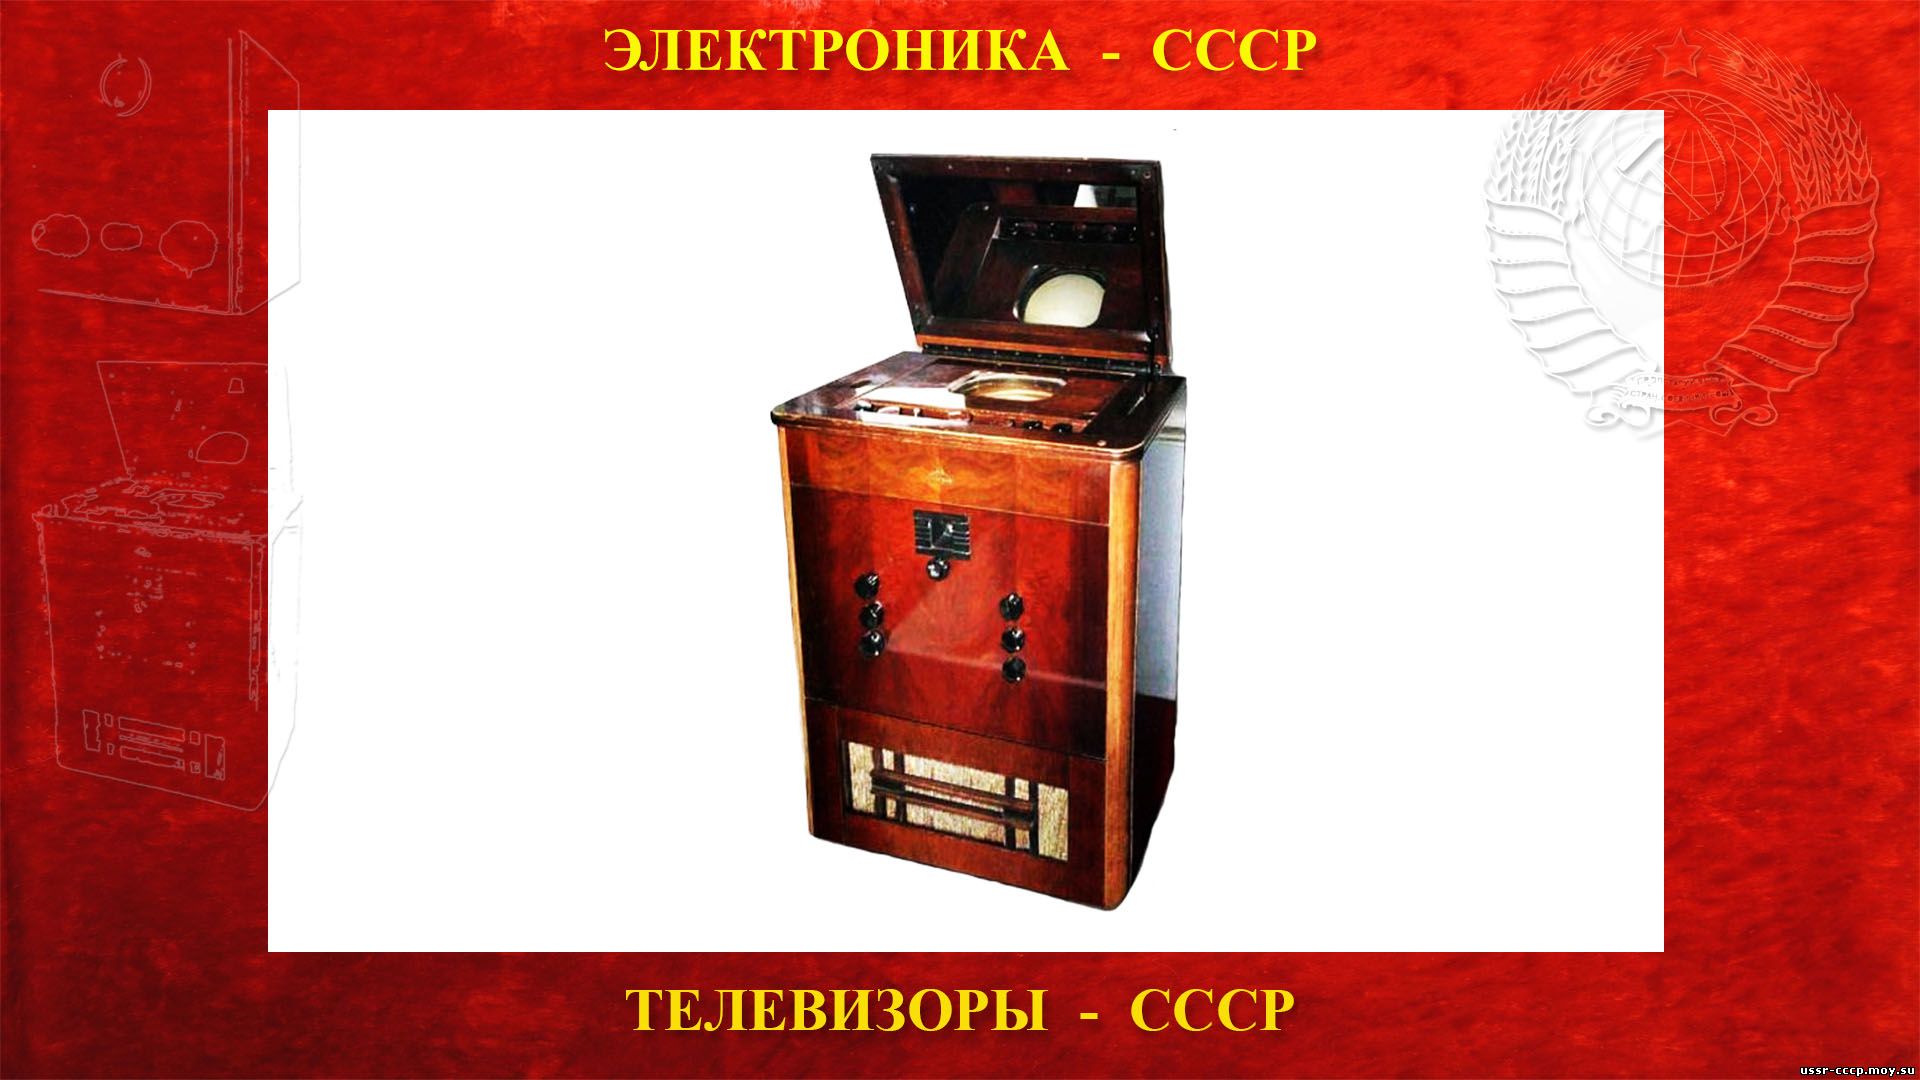 ТК-1 первый Советский электронный телевизионный приёмник СССР (06.01.1938)